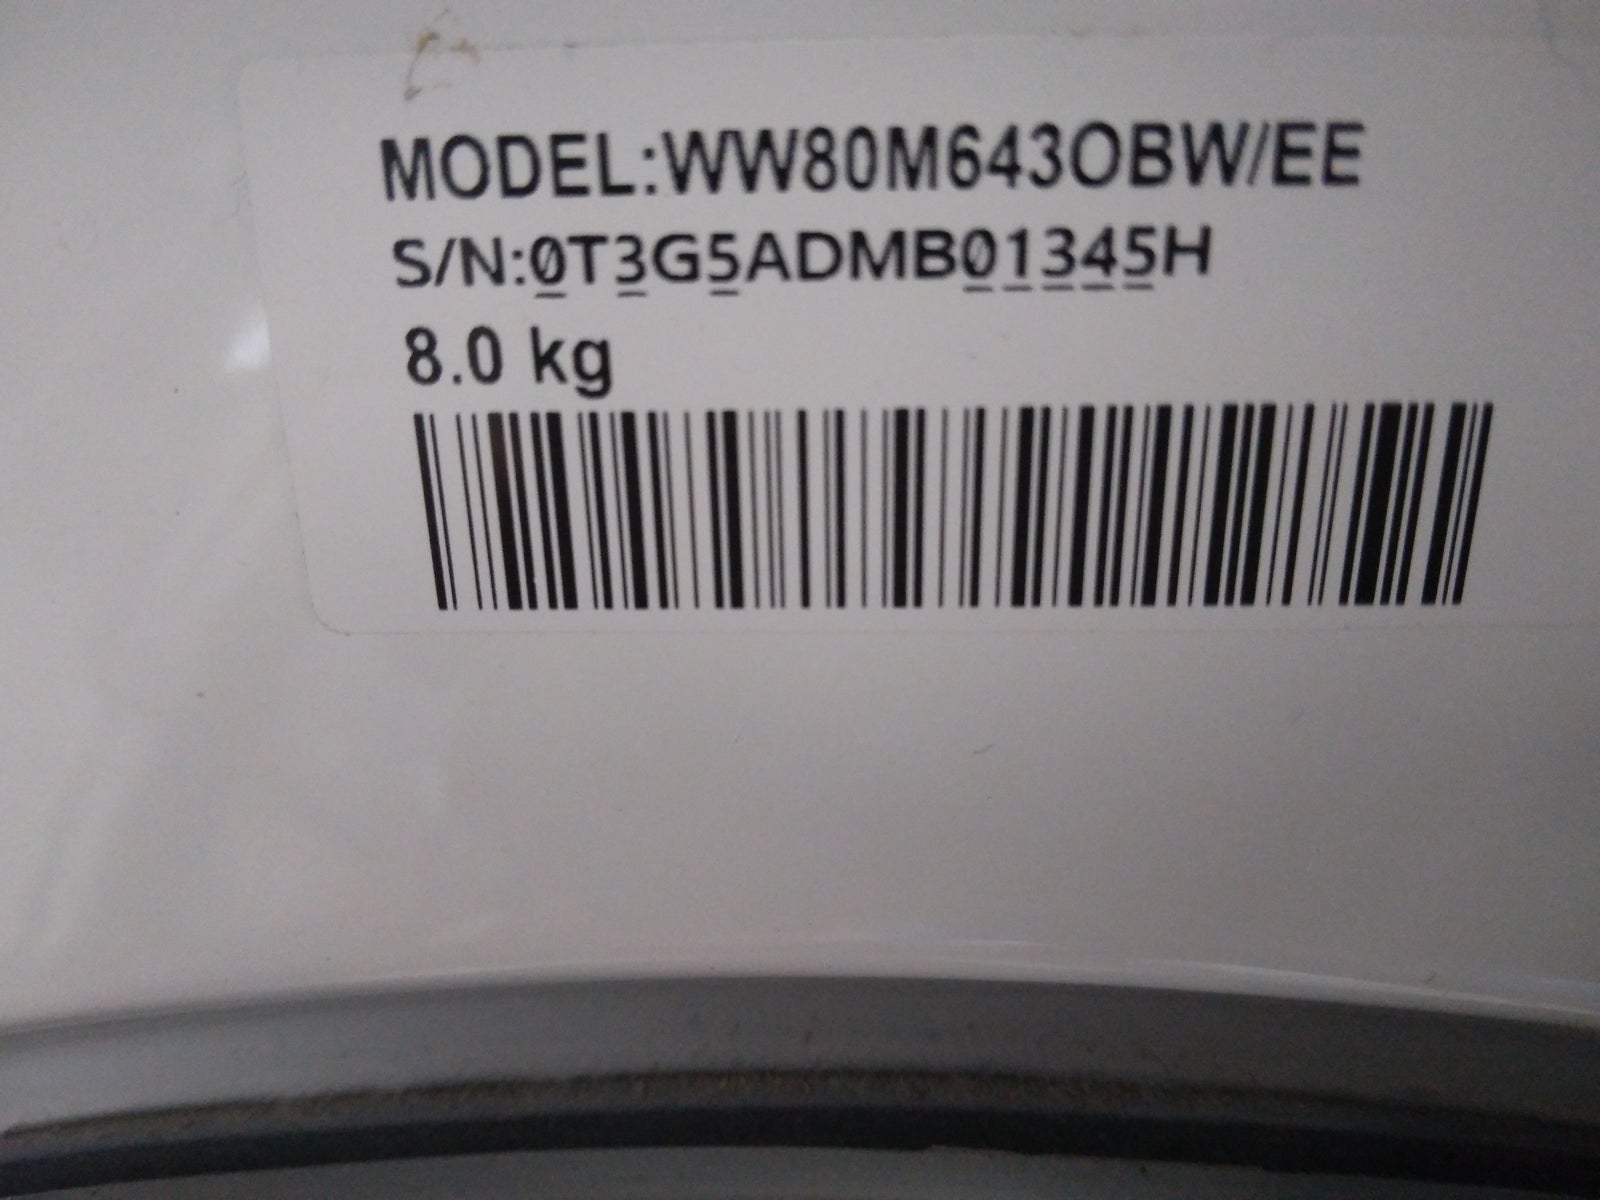 Samsung vaskemaskine, WW80M6430BW/EE, frontbetjent